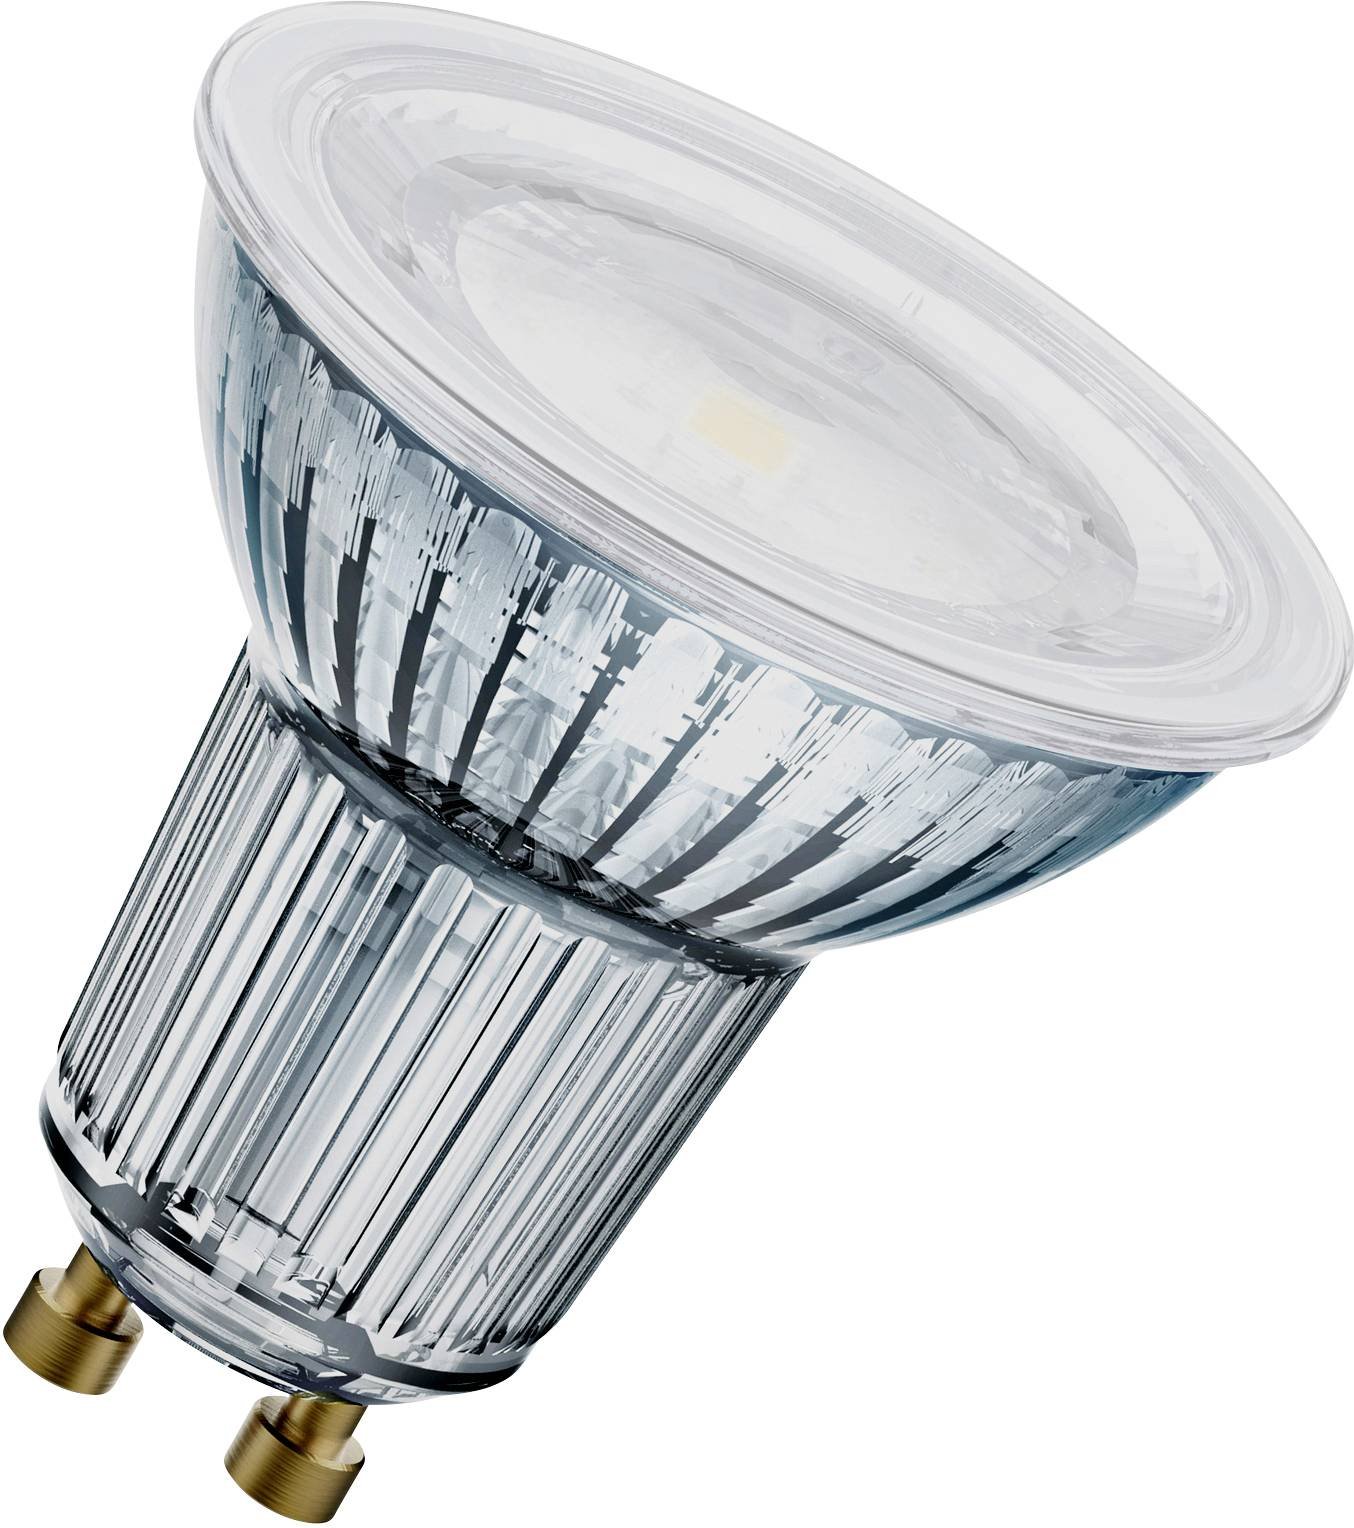 LED lemputė OSRAM, GU10, PAR16 80, reflektorinė, 7,9W, 4000K, 120°, 650 lm, dimeriuojama